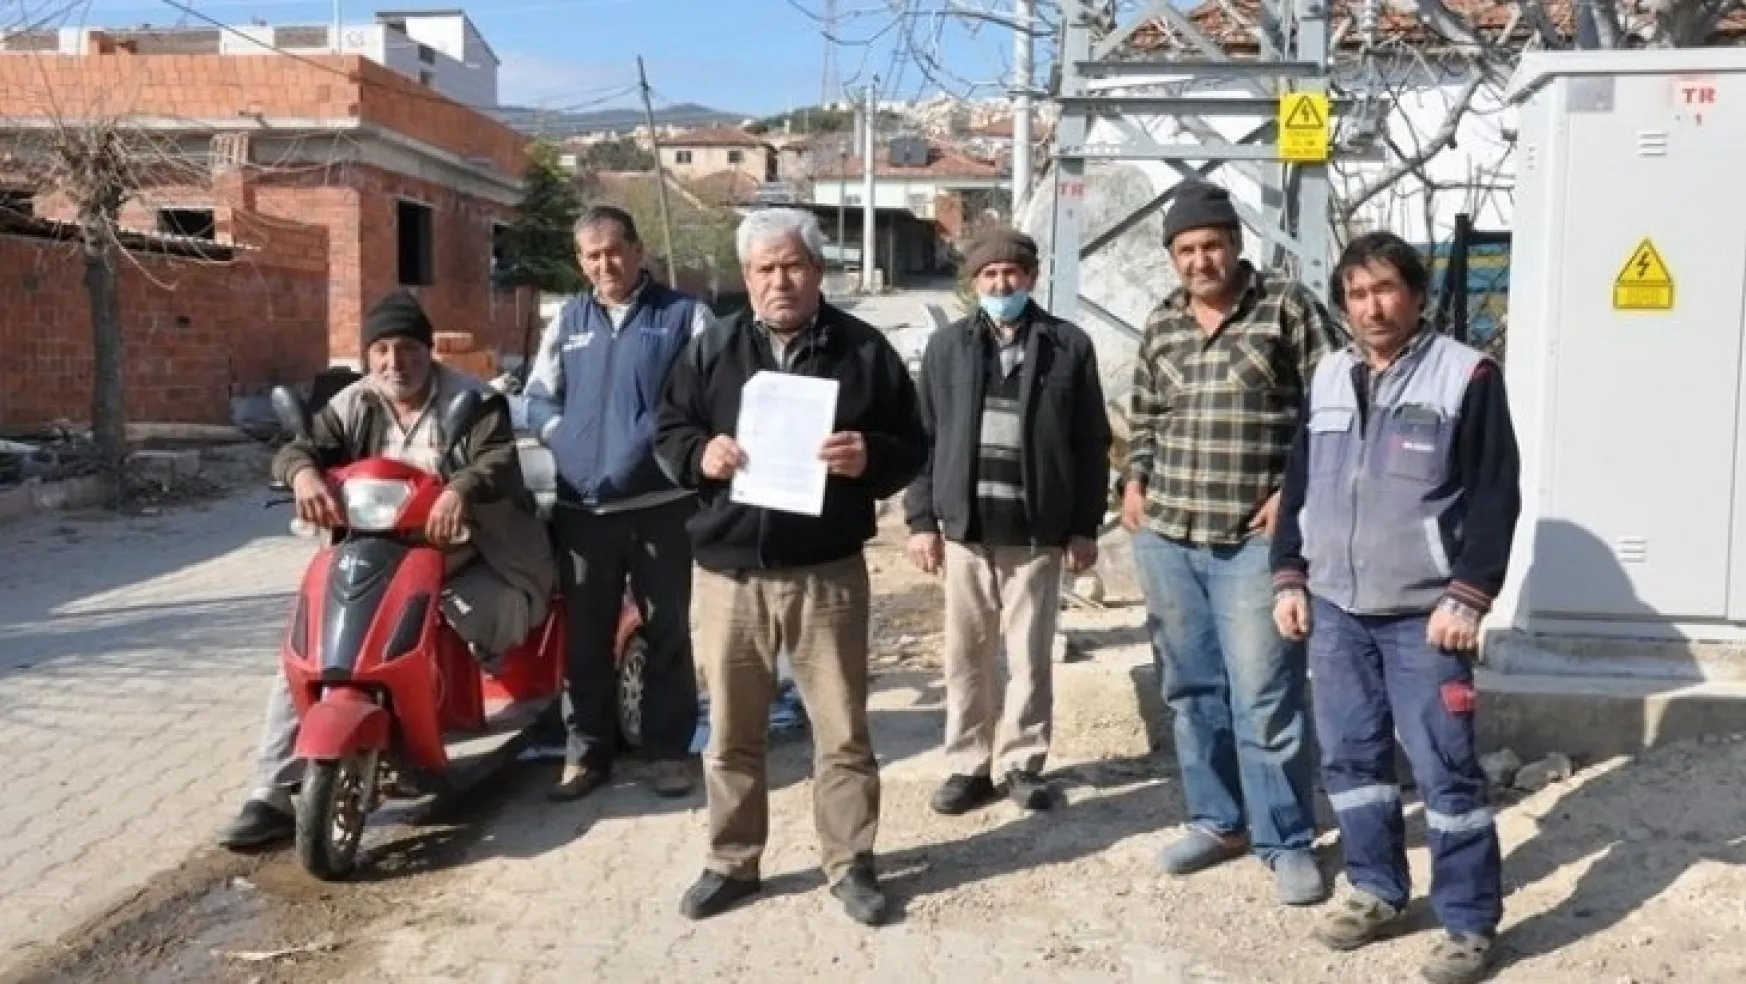 Canbazlı Turgutlu'ya bağlanmakta ısrarlı: Mahalle Muhtarı Gazetemize açıklama yaptı